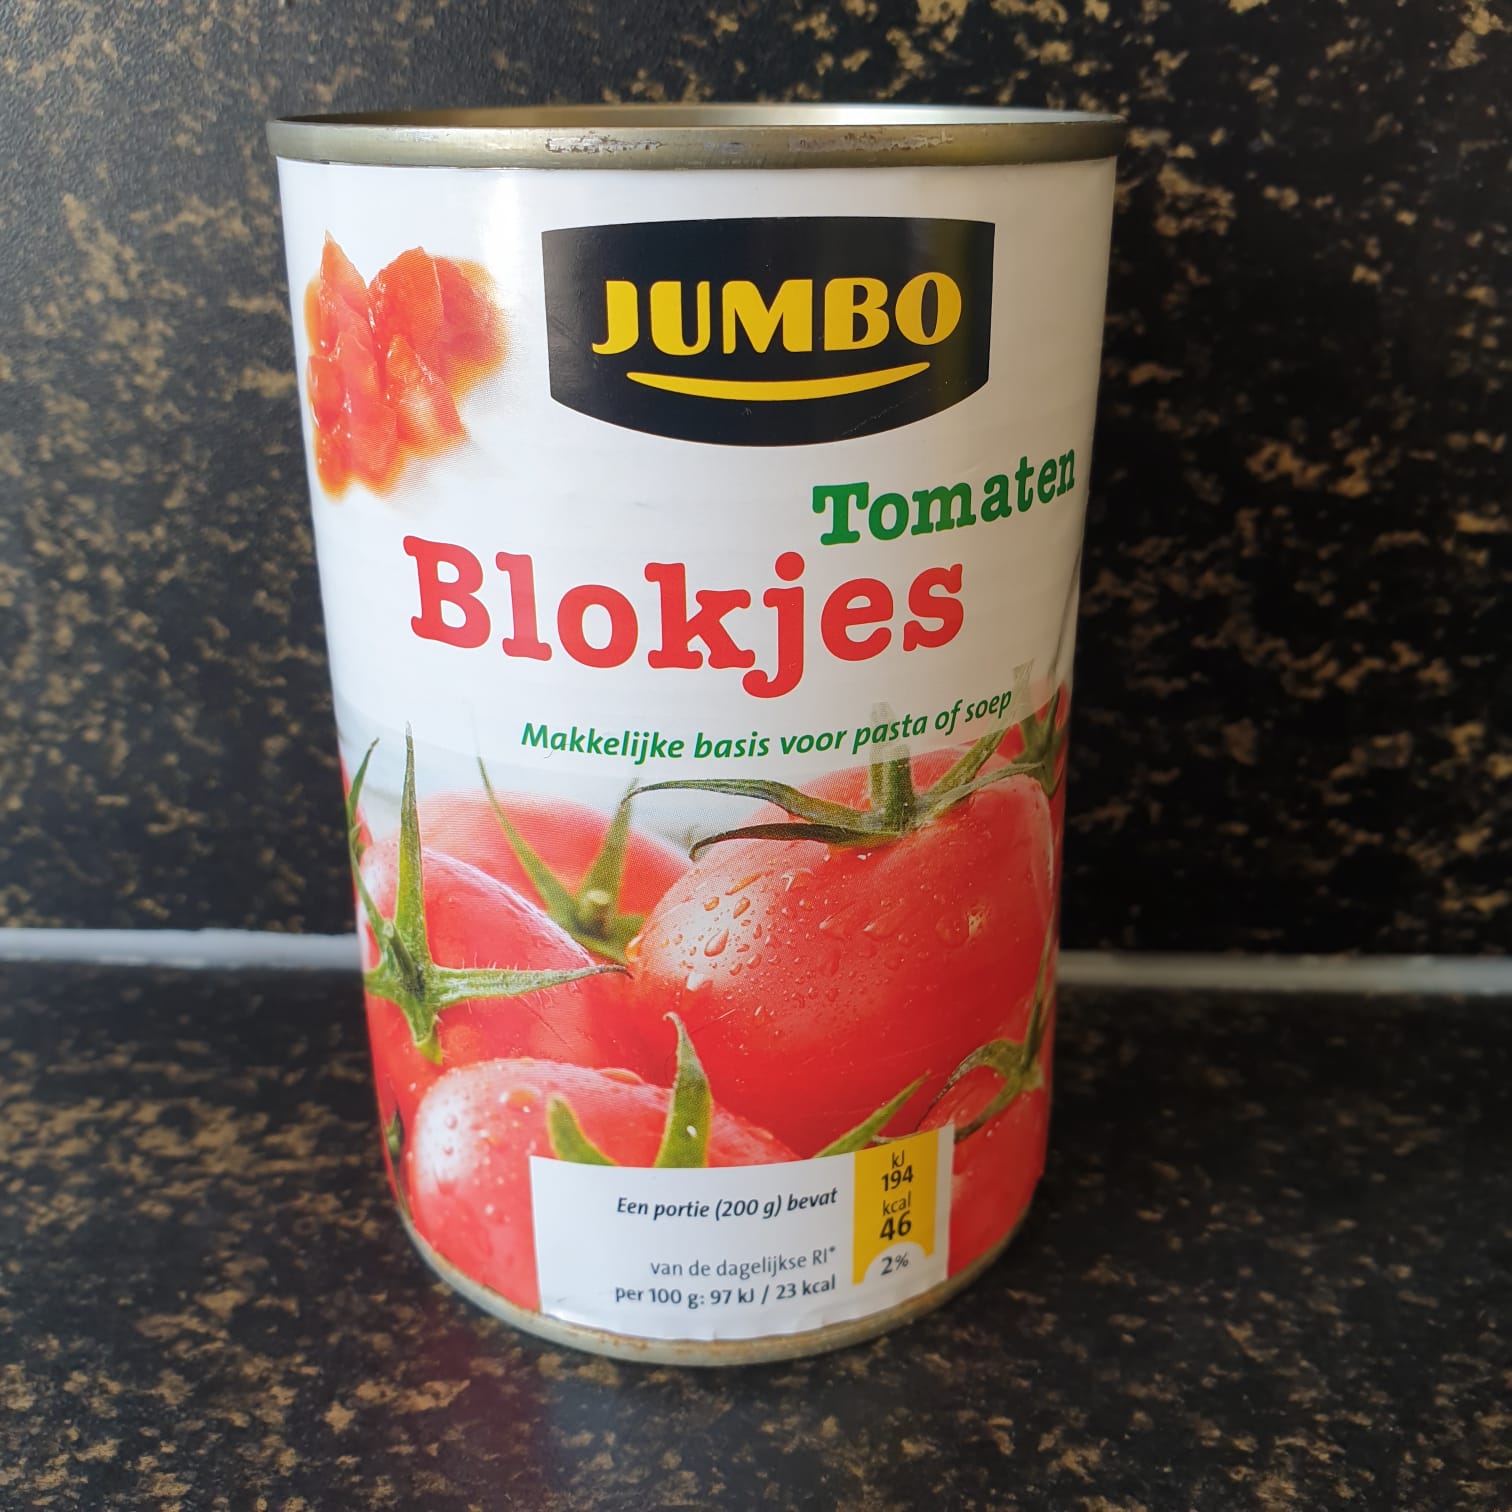 Keto Review: Tomaten in blik